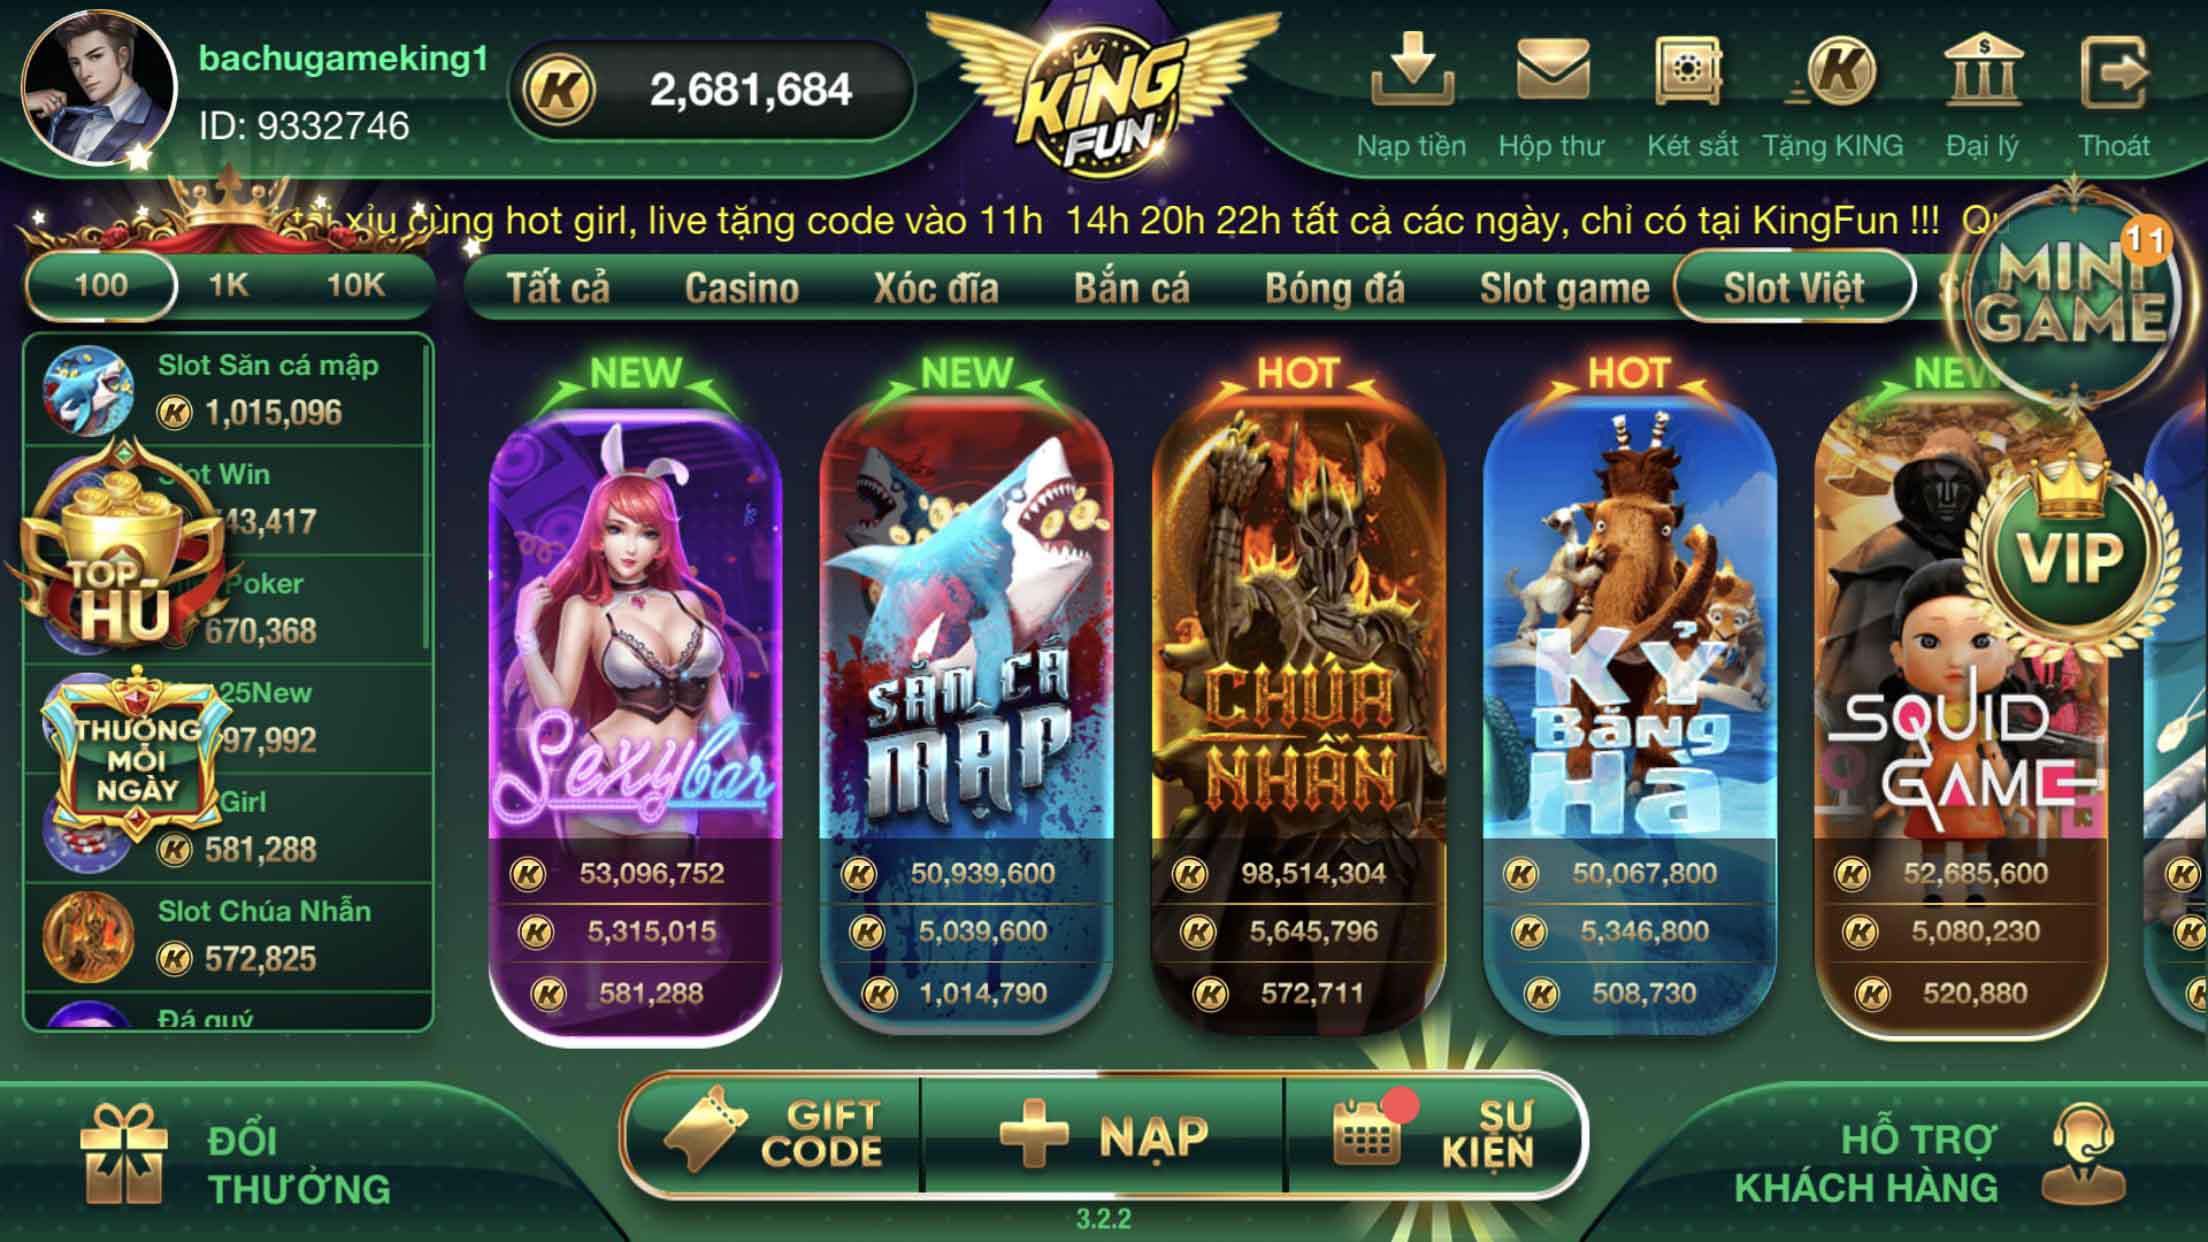 Giới thiệu về Slot game Săn Cá Mập tại cổng game Kingfun